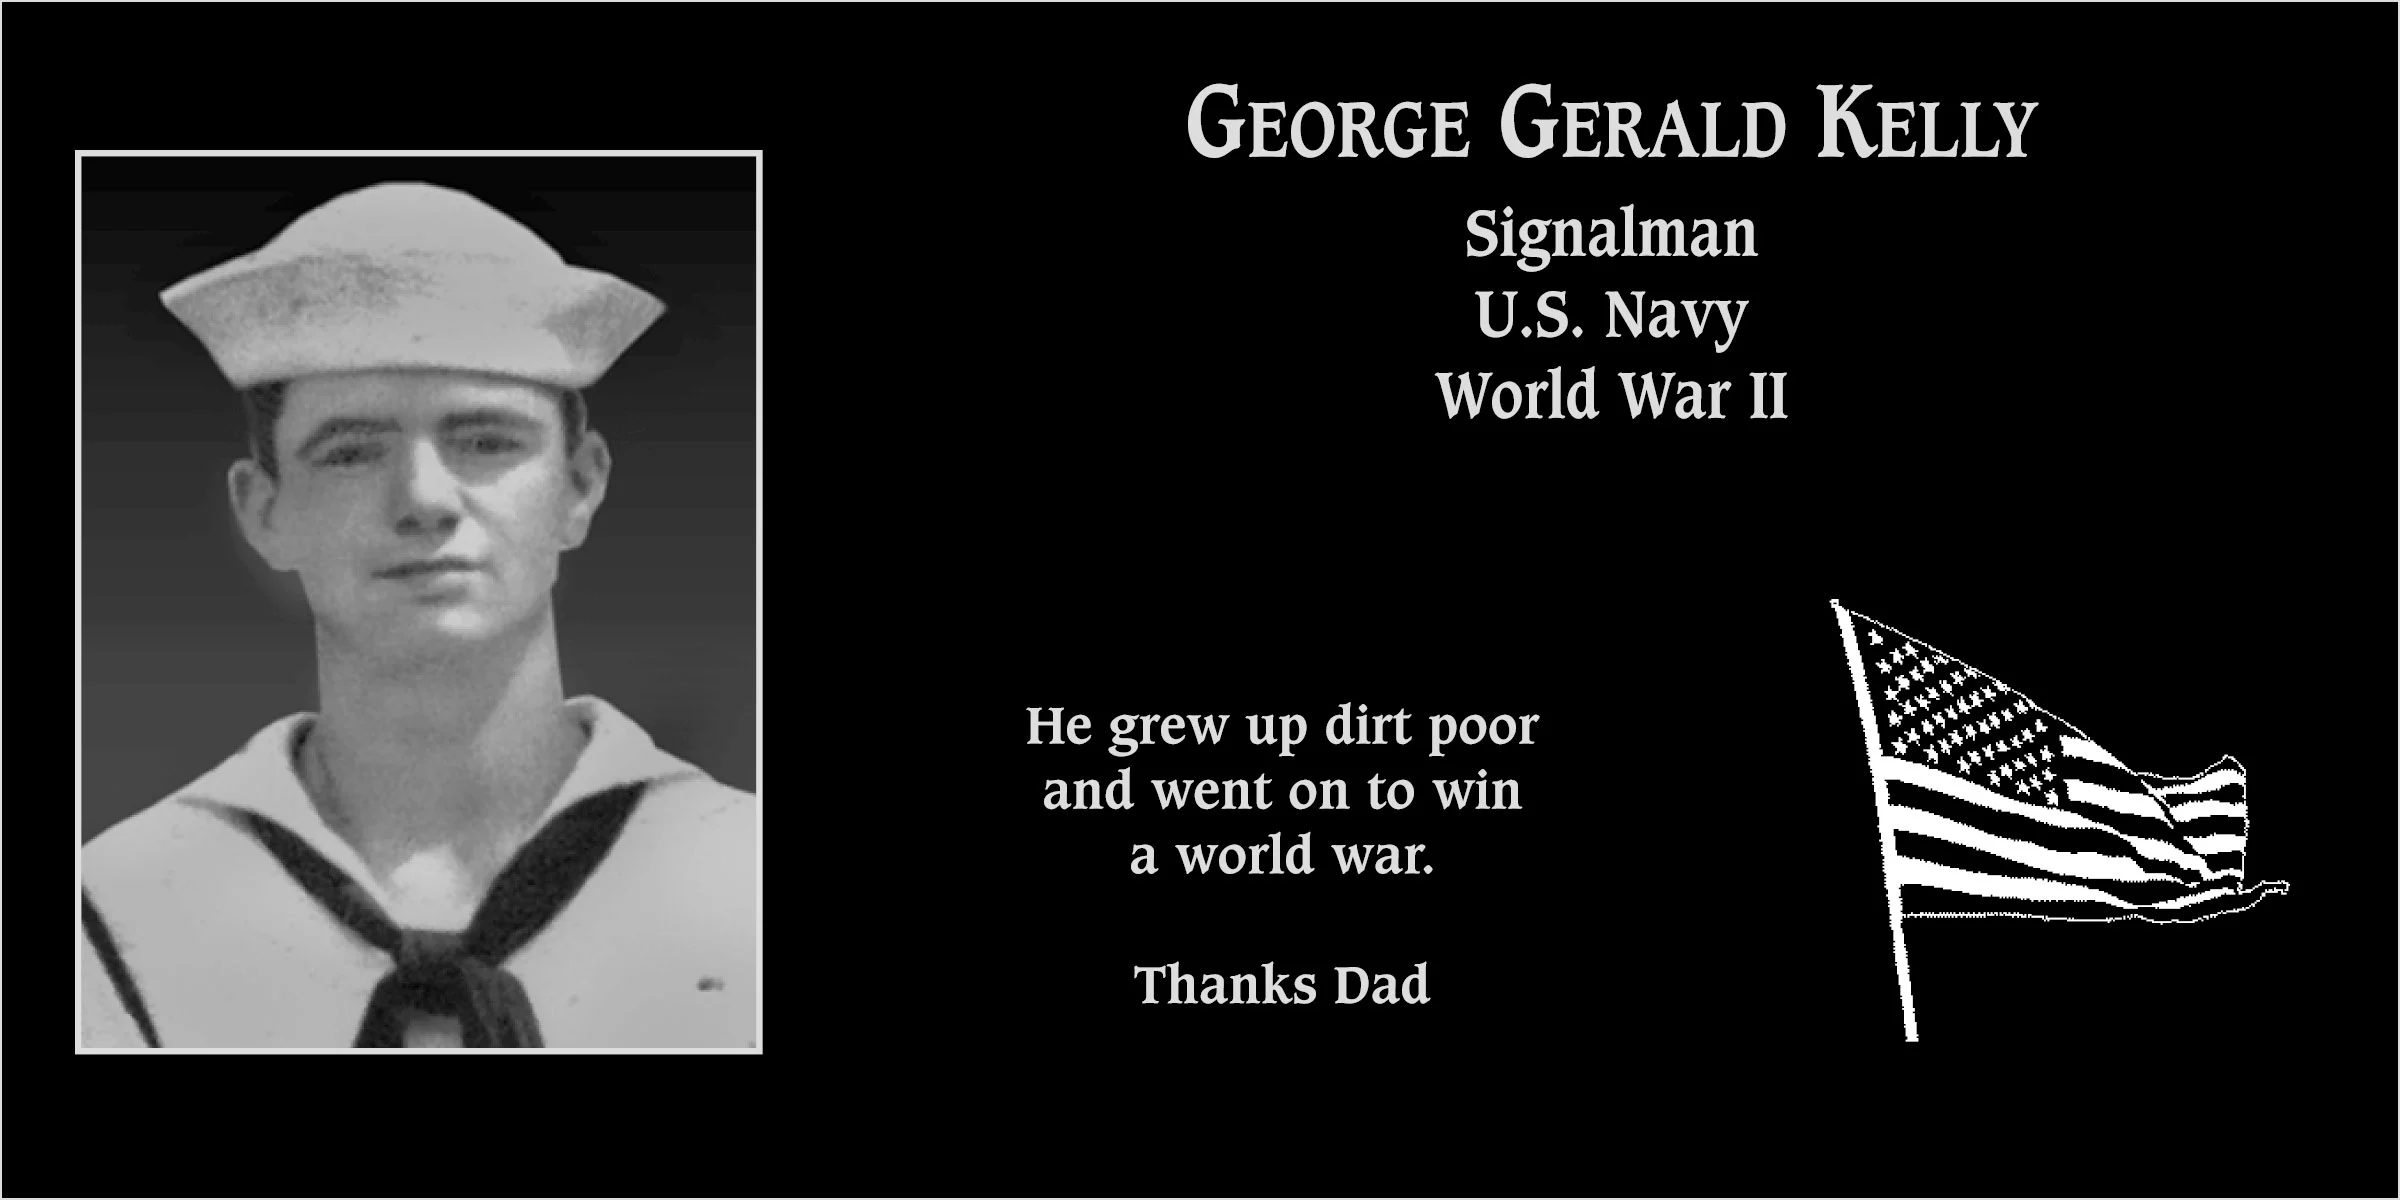 George Gerald Kelly